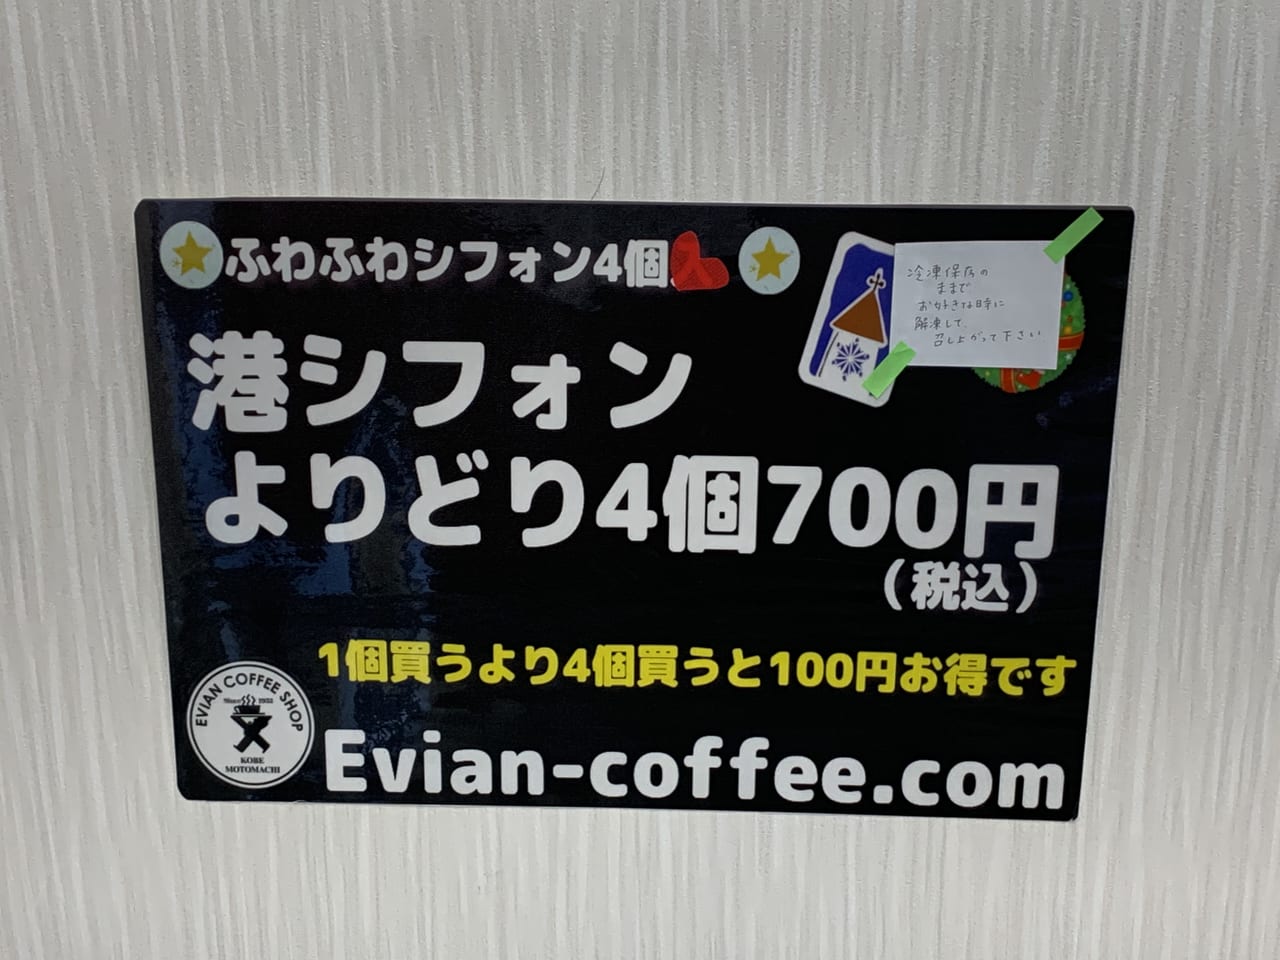 尼崎市 そのだ製菓の 工場直売ケーキ がリニューアル Evian Coffee Shopの工場直売店舗になっていました 号外net 尼崎市